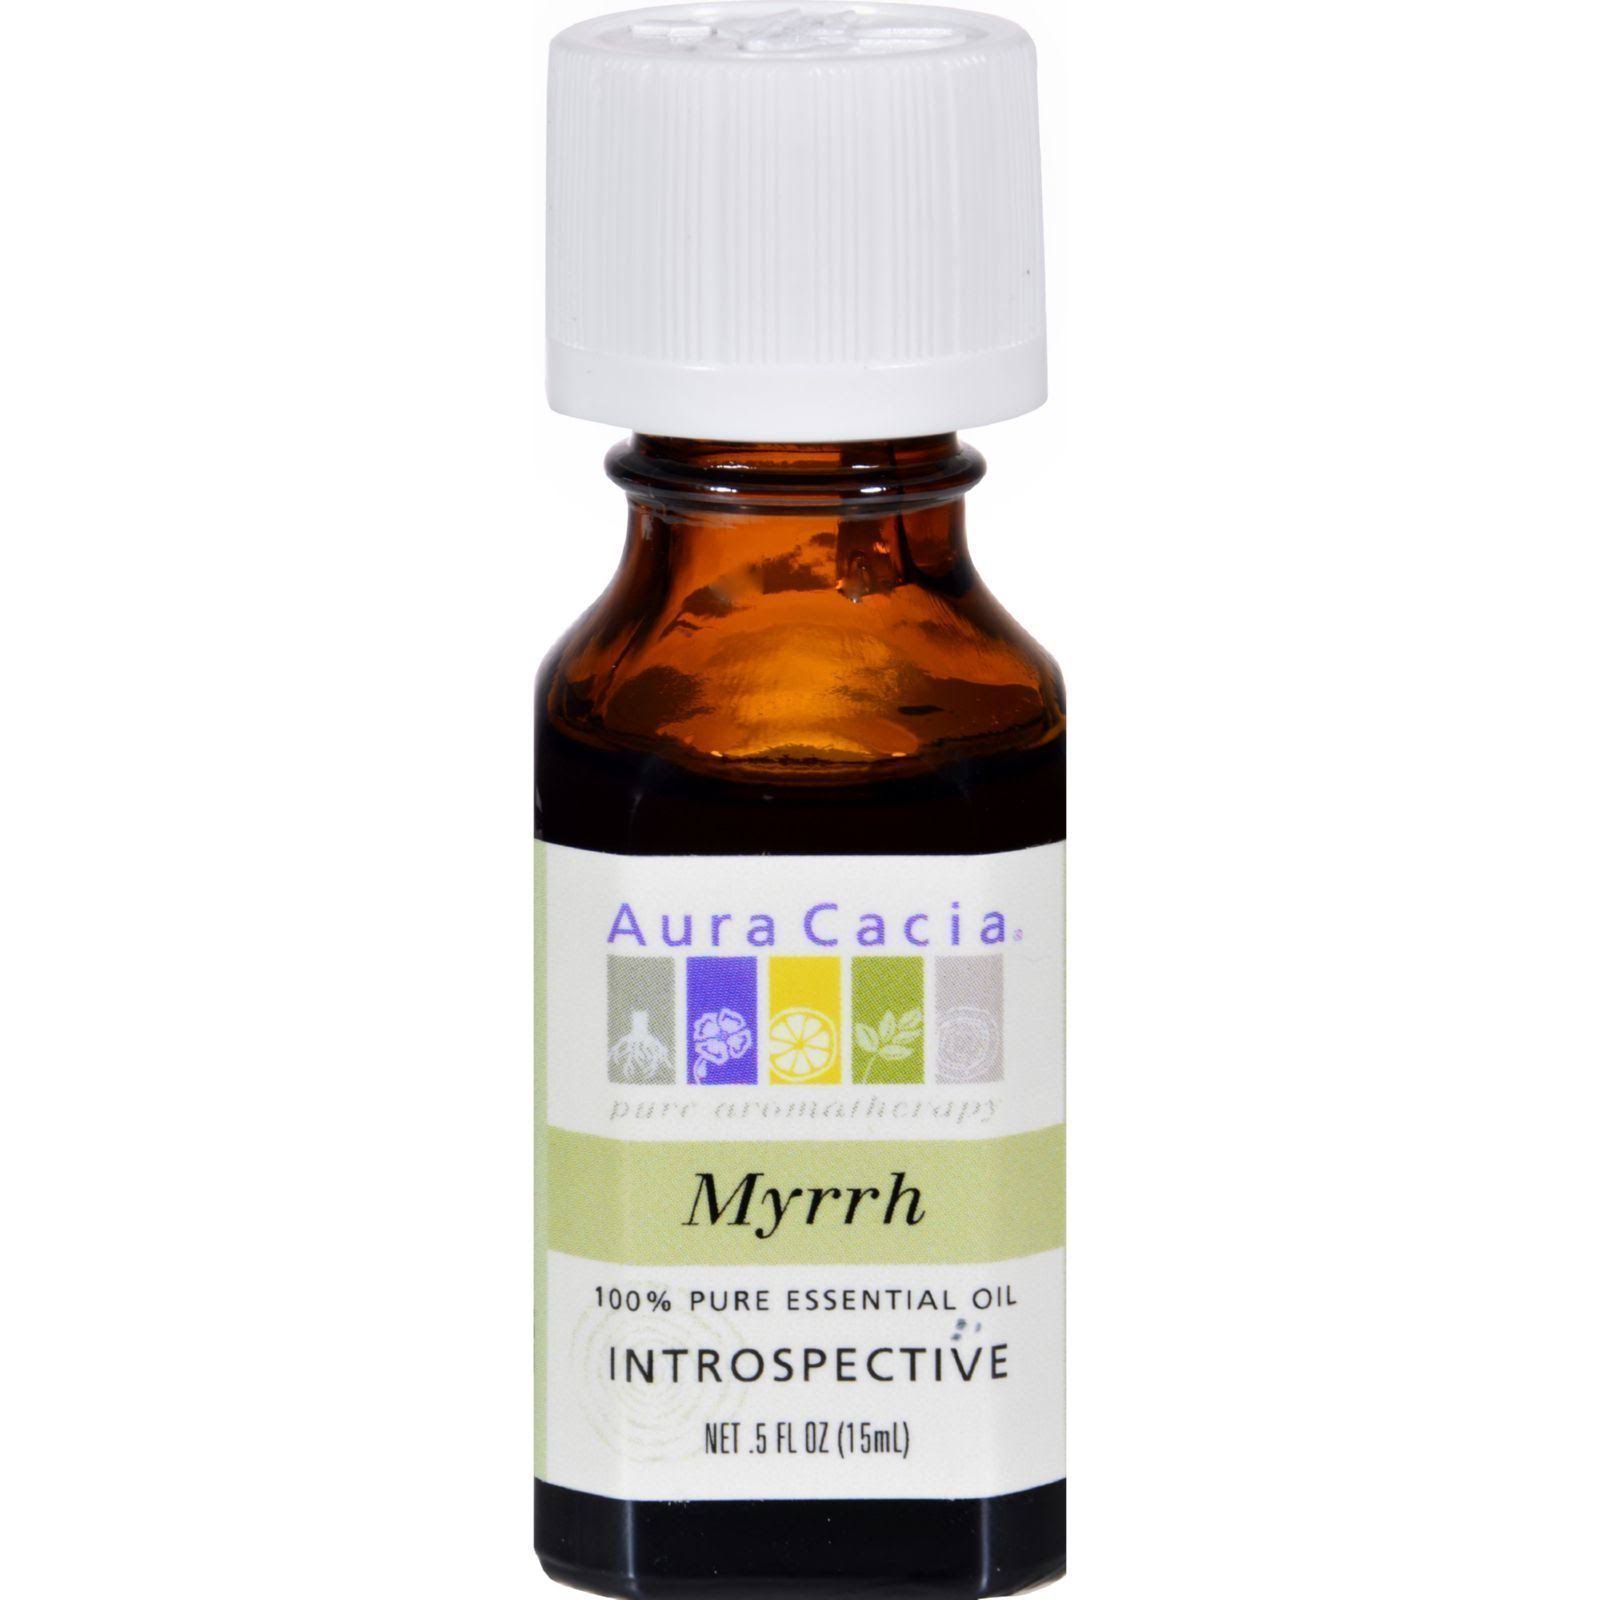 Aura Cacia Pure Essential Oil - Myrrh, 0.5oz